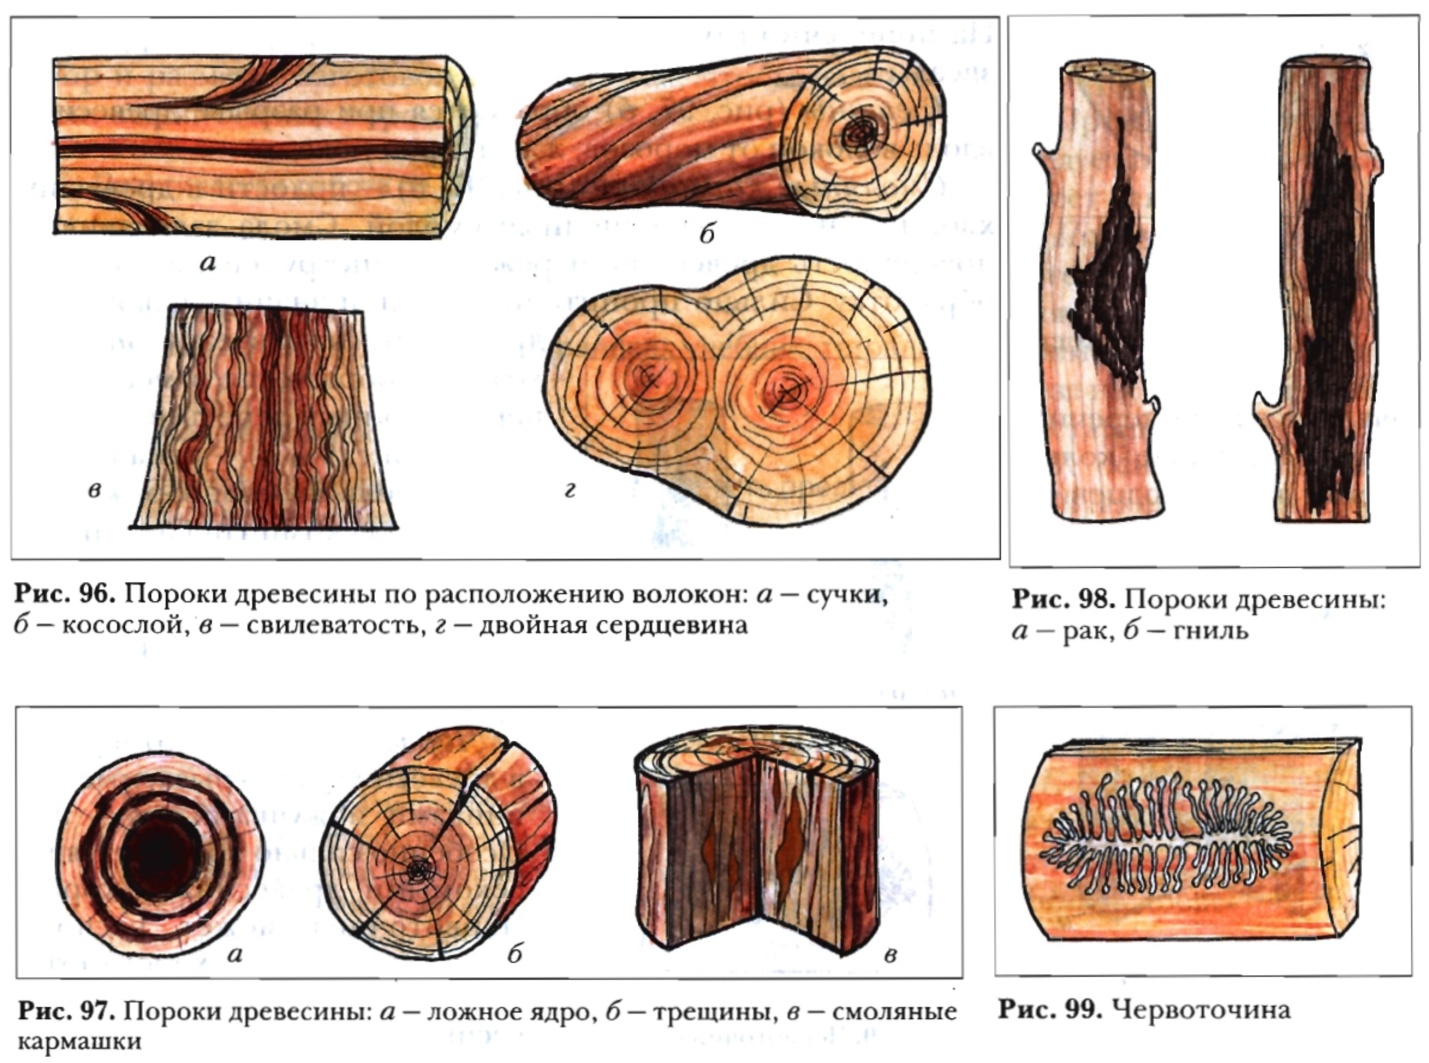 названия пороков древесины